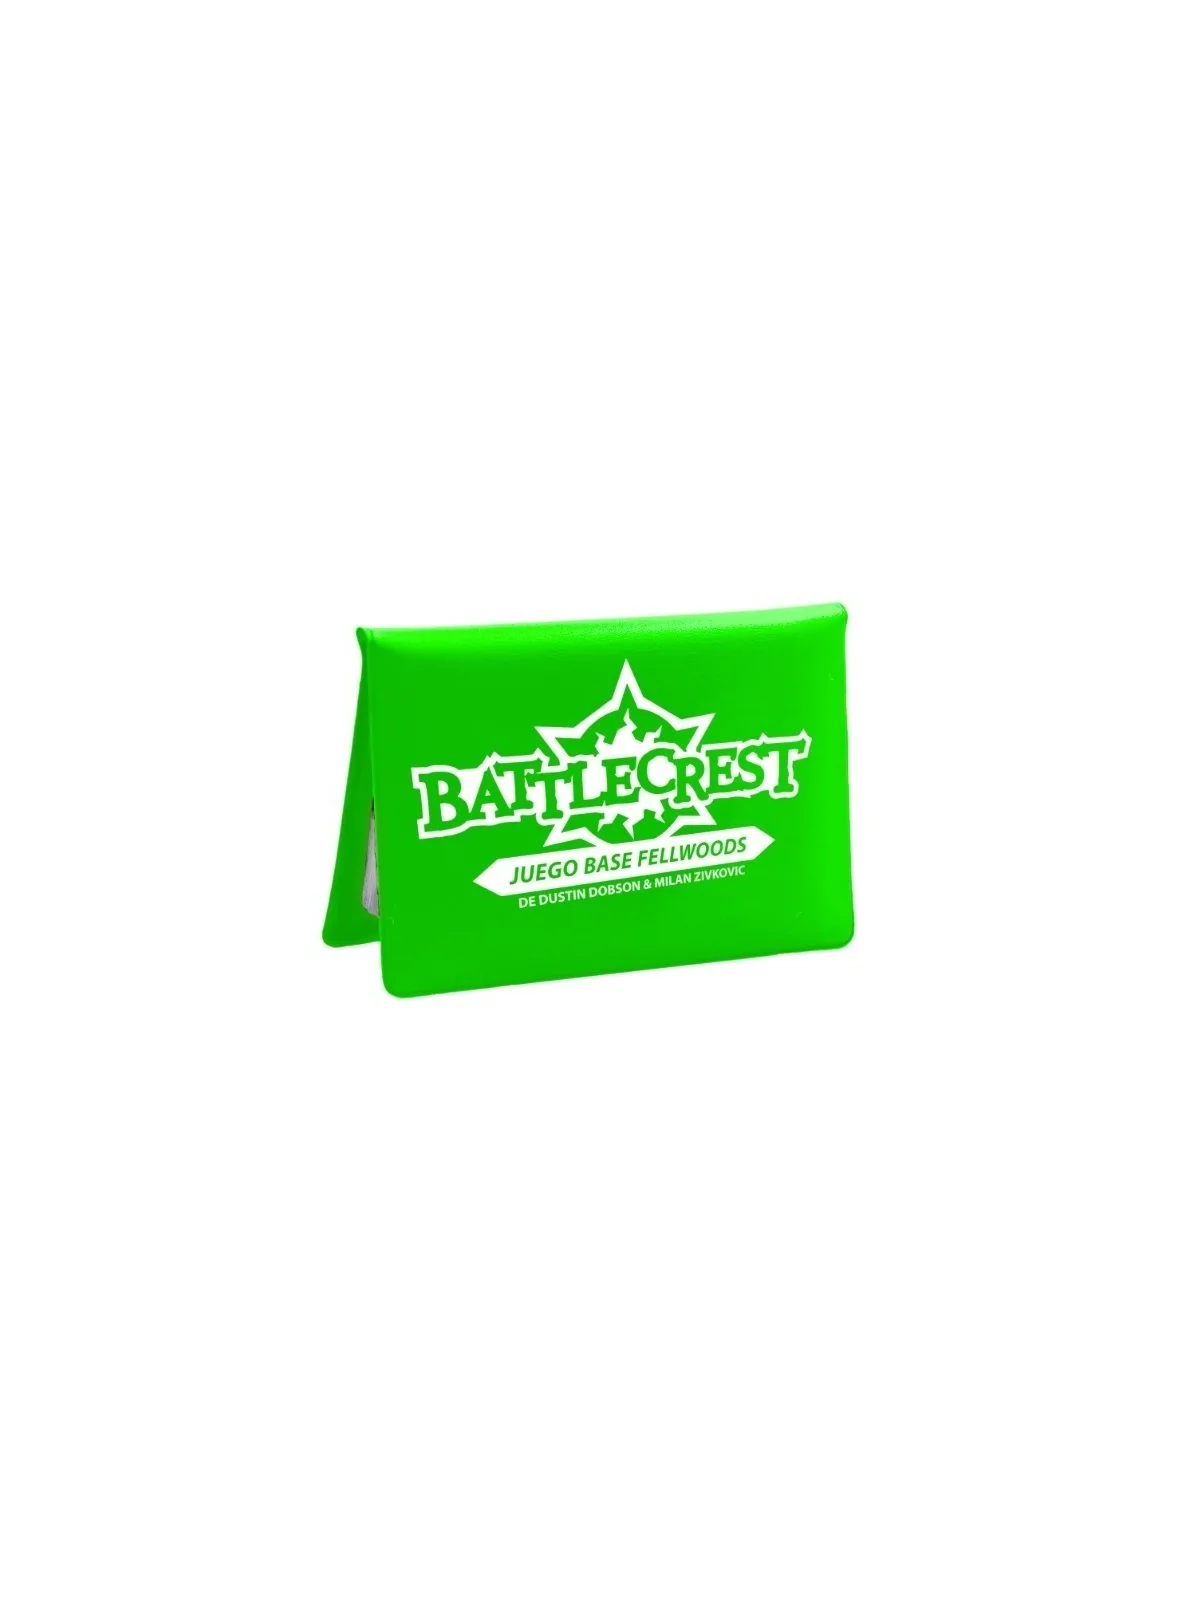 Comprar Battlecrest: Juego Base Fellwoods barato al mejor precio 14,35